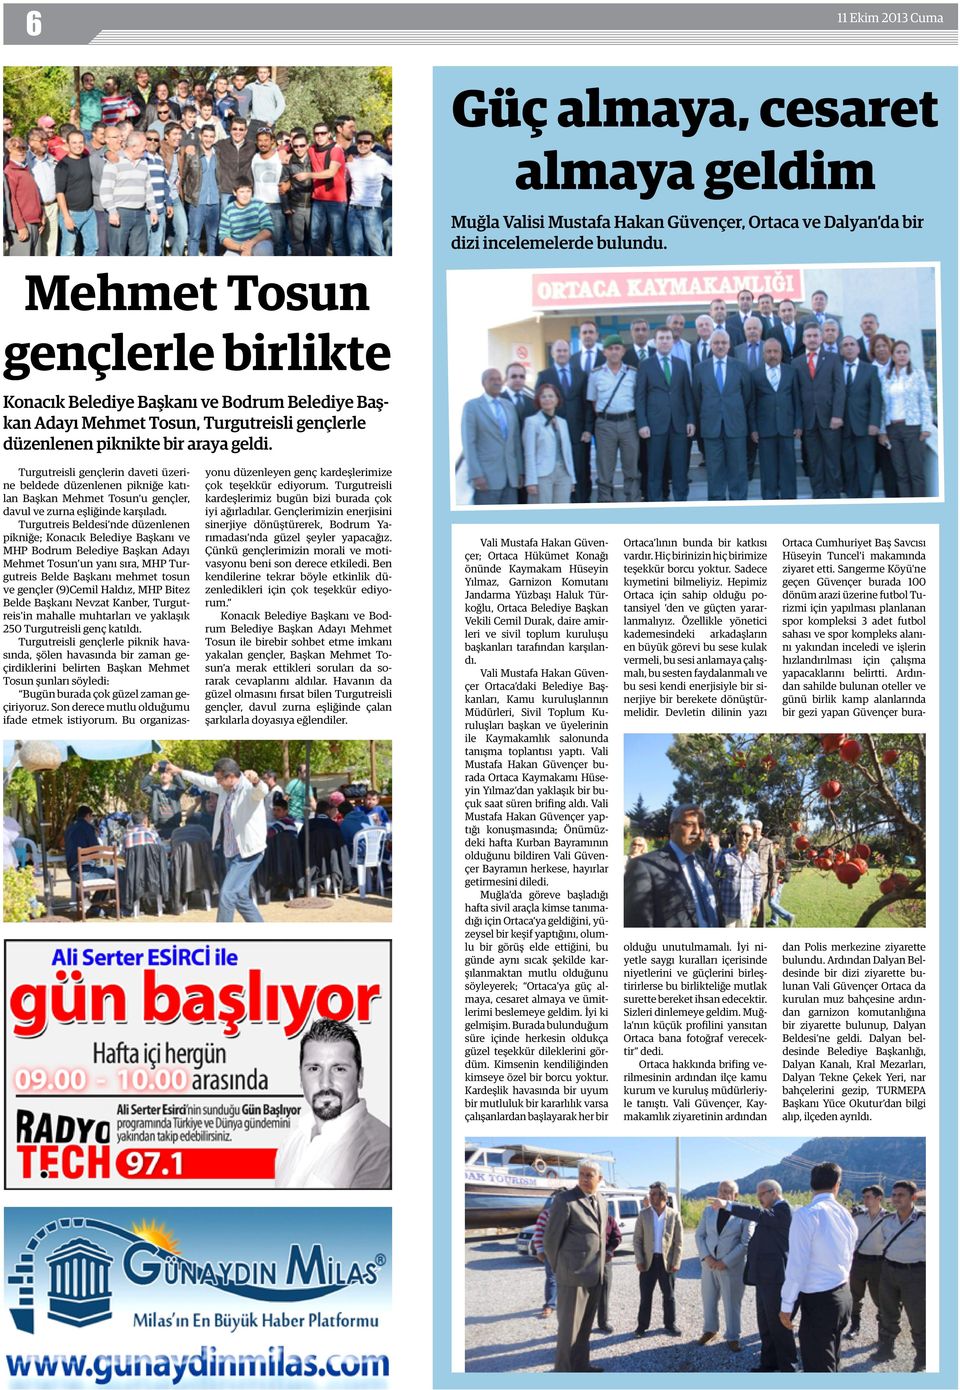 Turgutreisli gençlerin daveti üzerine beldede düzenlenen pikniğe katılan Başkan Mehmet Tosun u gençler, davul ve zurna eşliğinde karşıladı.